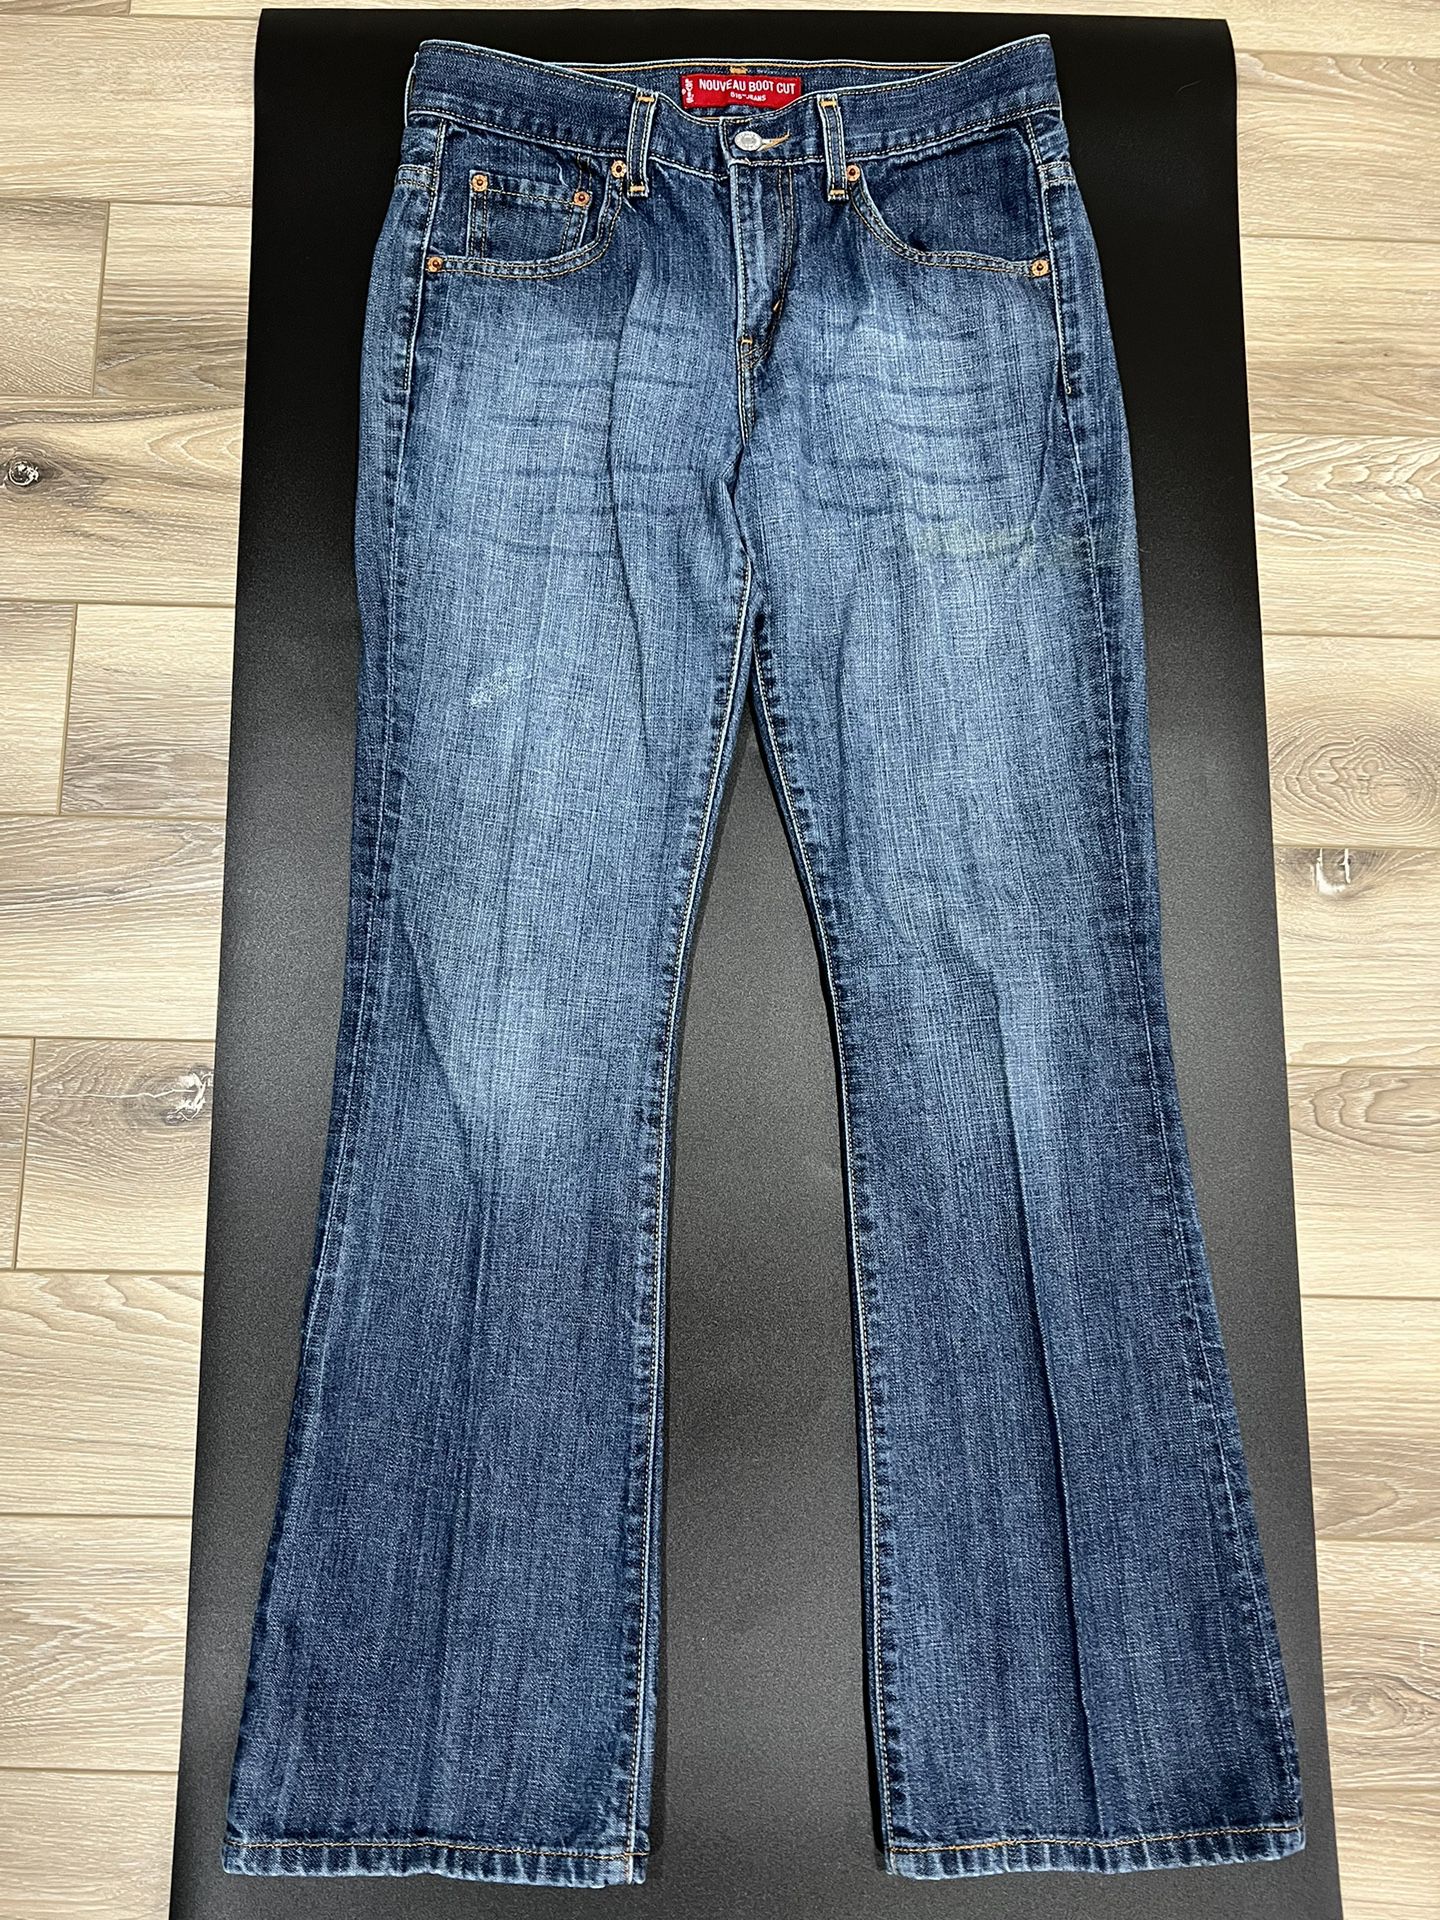 Vintage Levis 515 Jeans Womens 8 Blue Nouveau Bootcut Stretch Low Rise Size 8